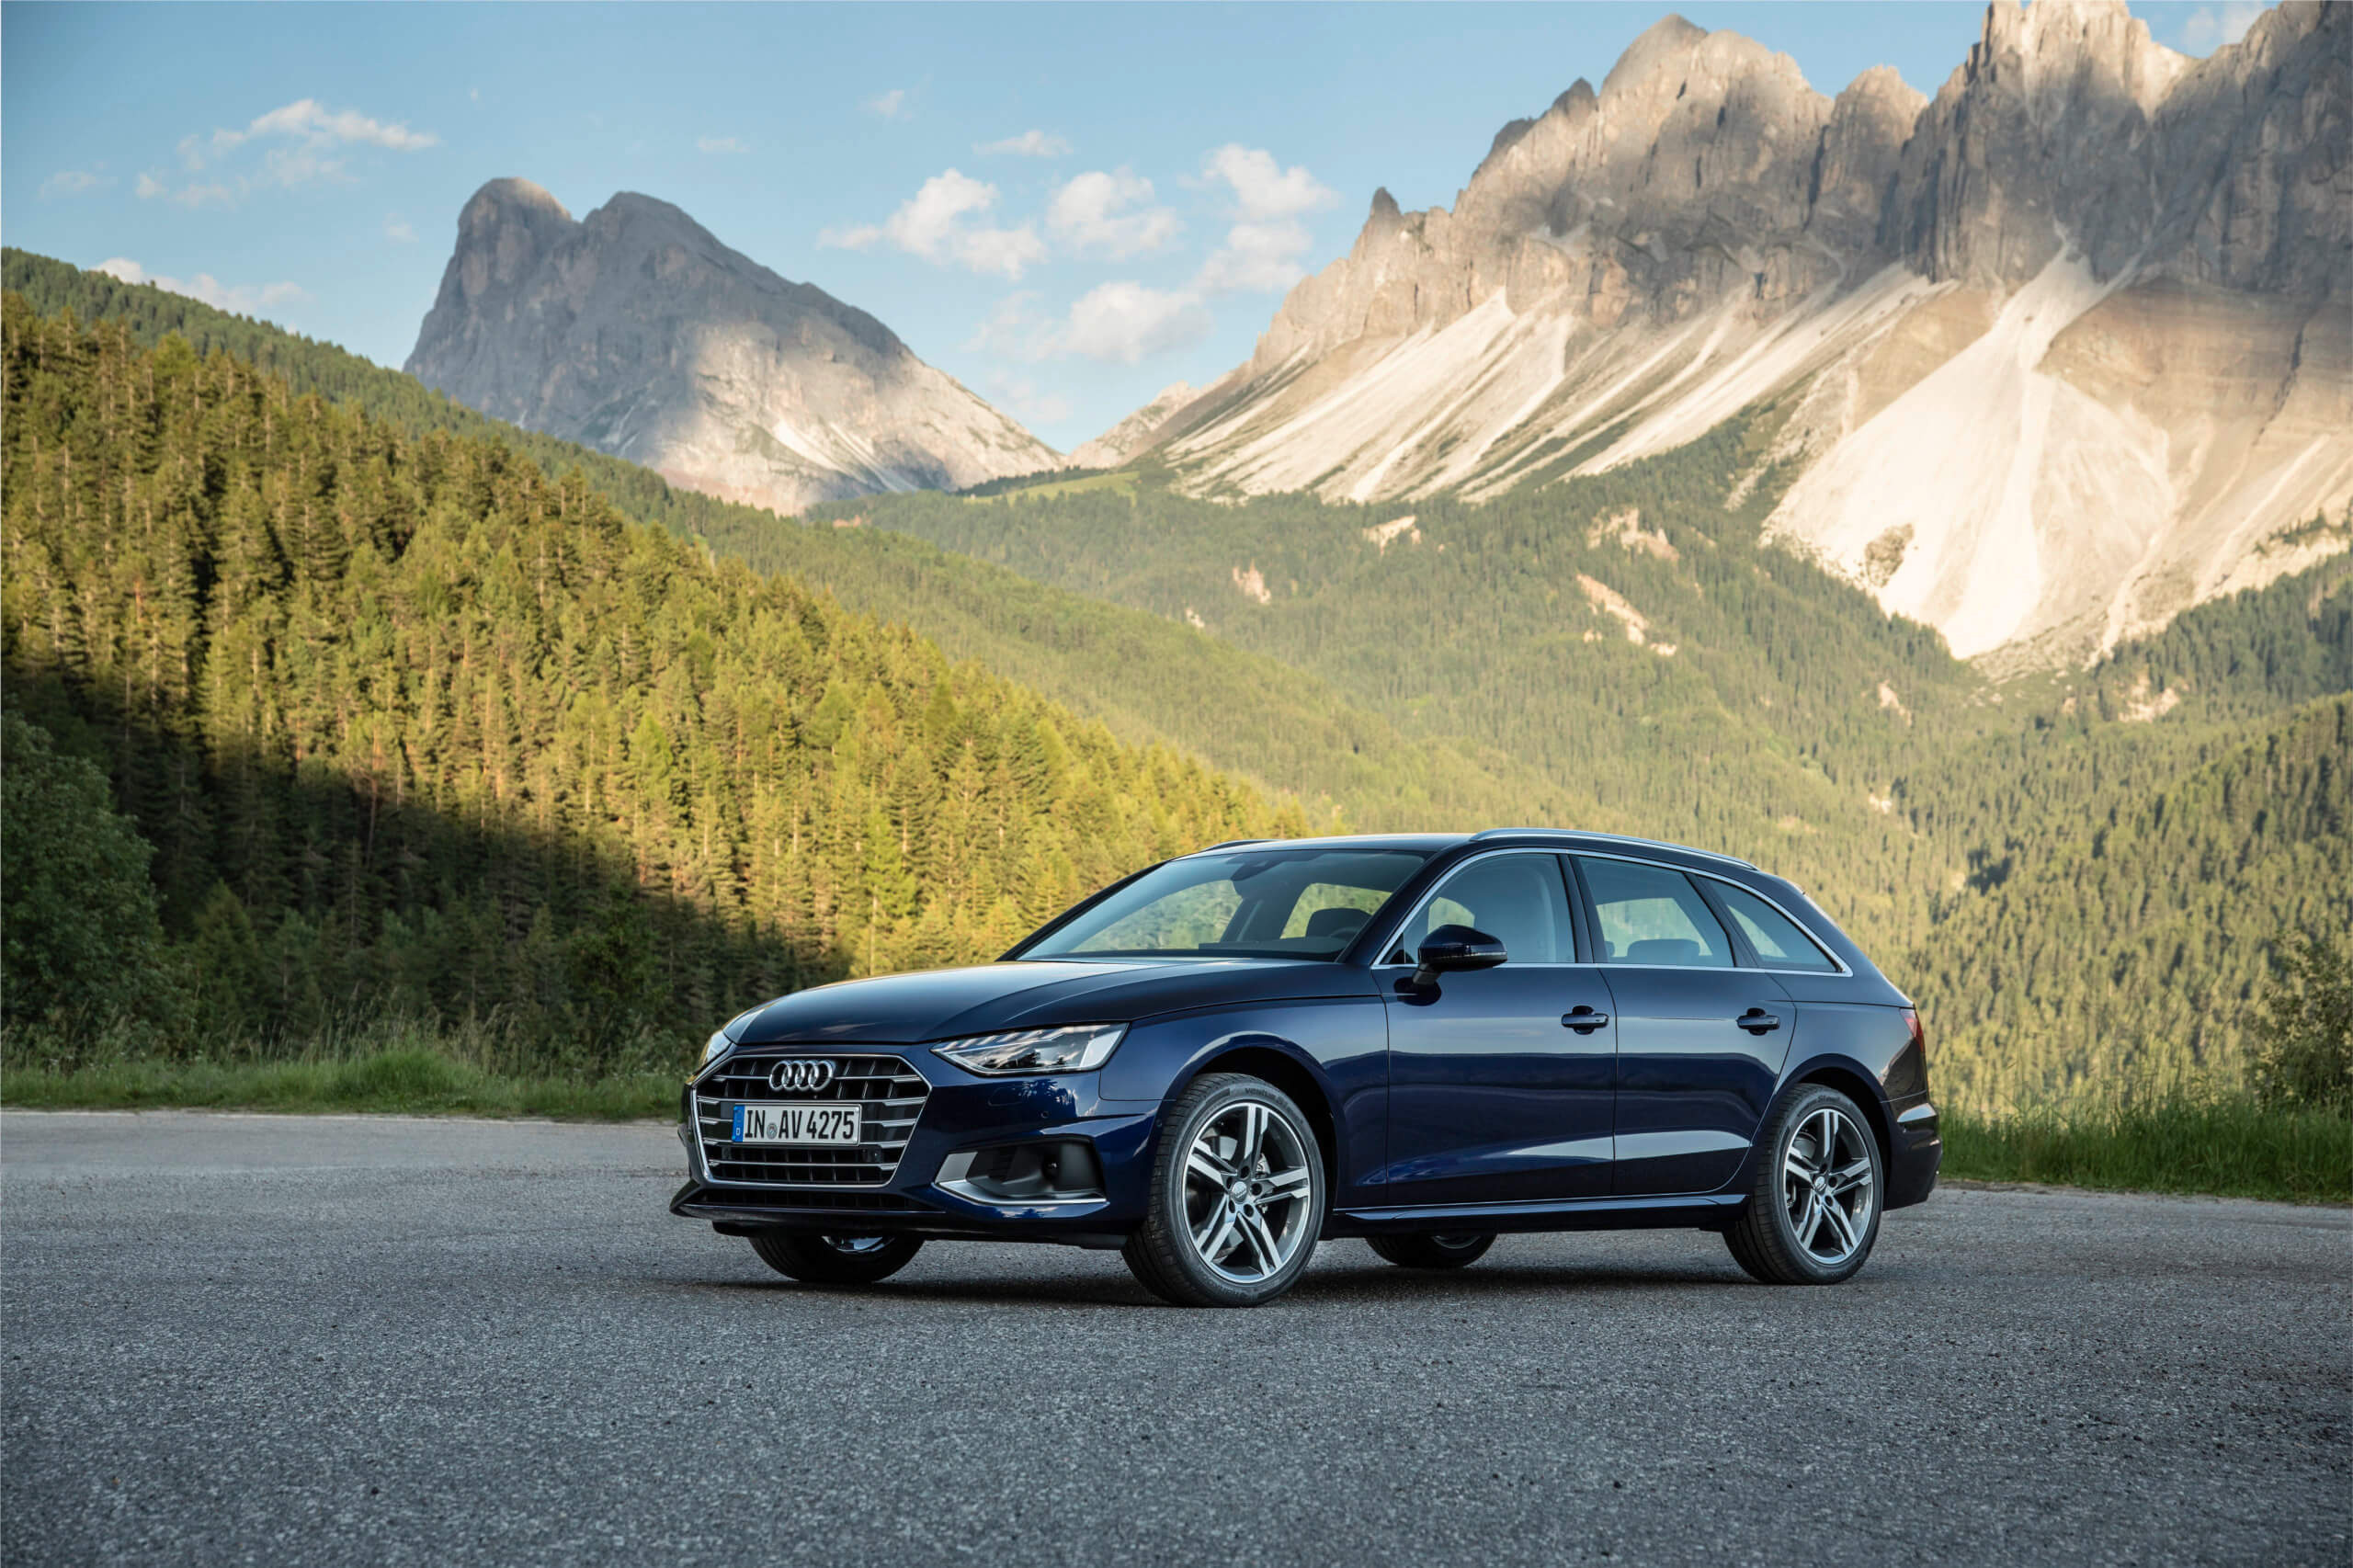 Audi A4, Leasing fr 369 euro, S-line avant, Full service, 2560x1710 HD Desktop